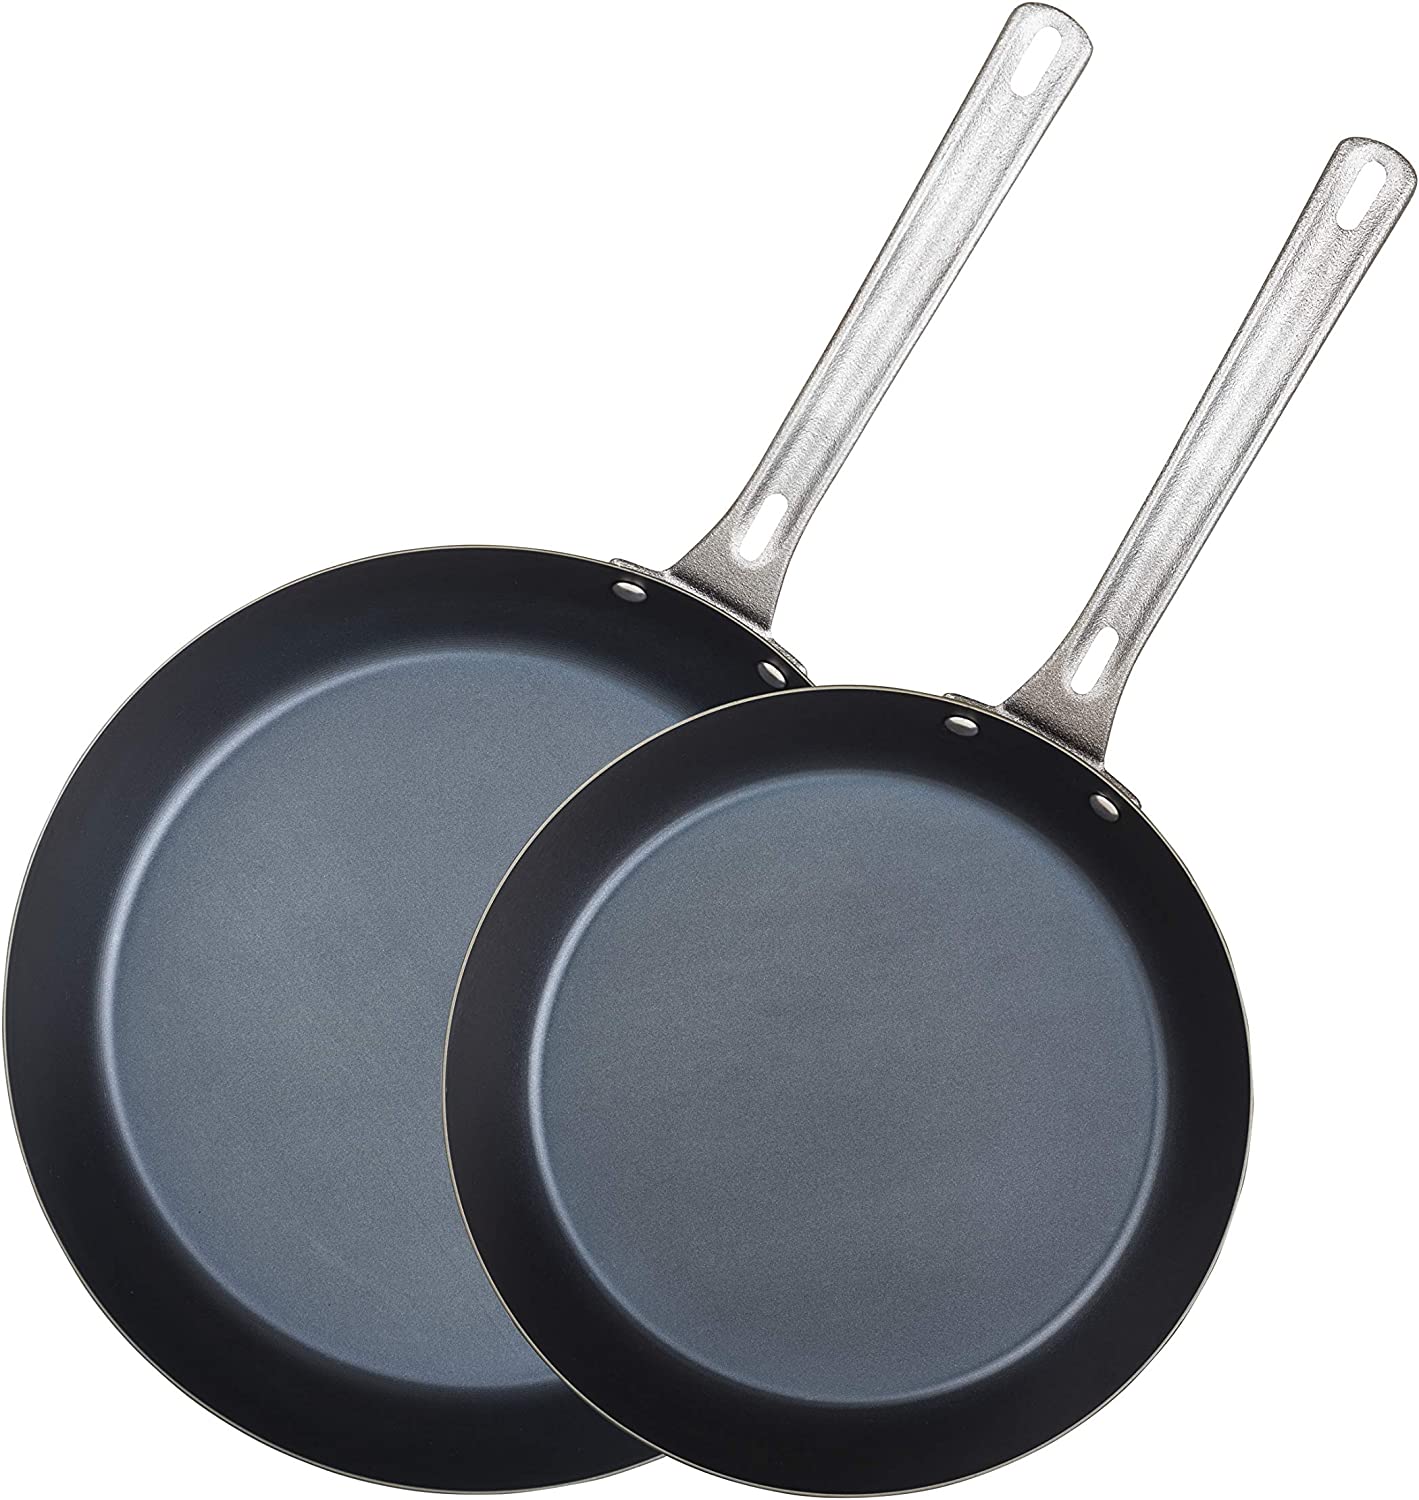 Blue steel cookware set